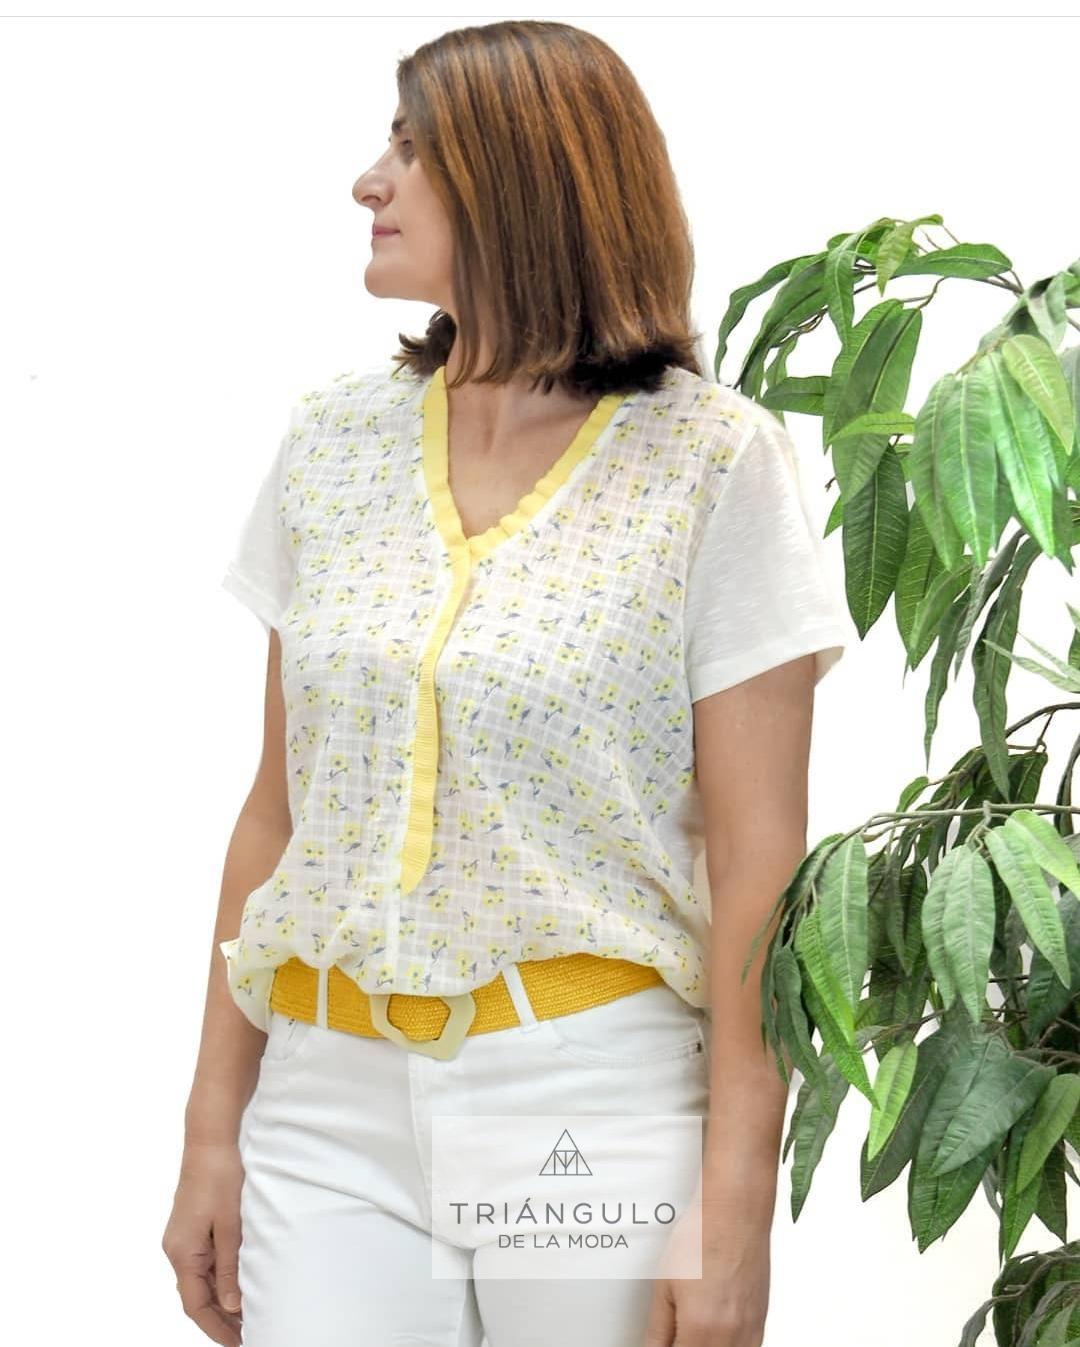 Tienda online del Triangulo de la Moda blusa primavera verano 